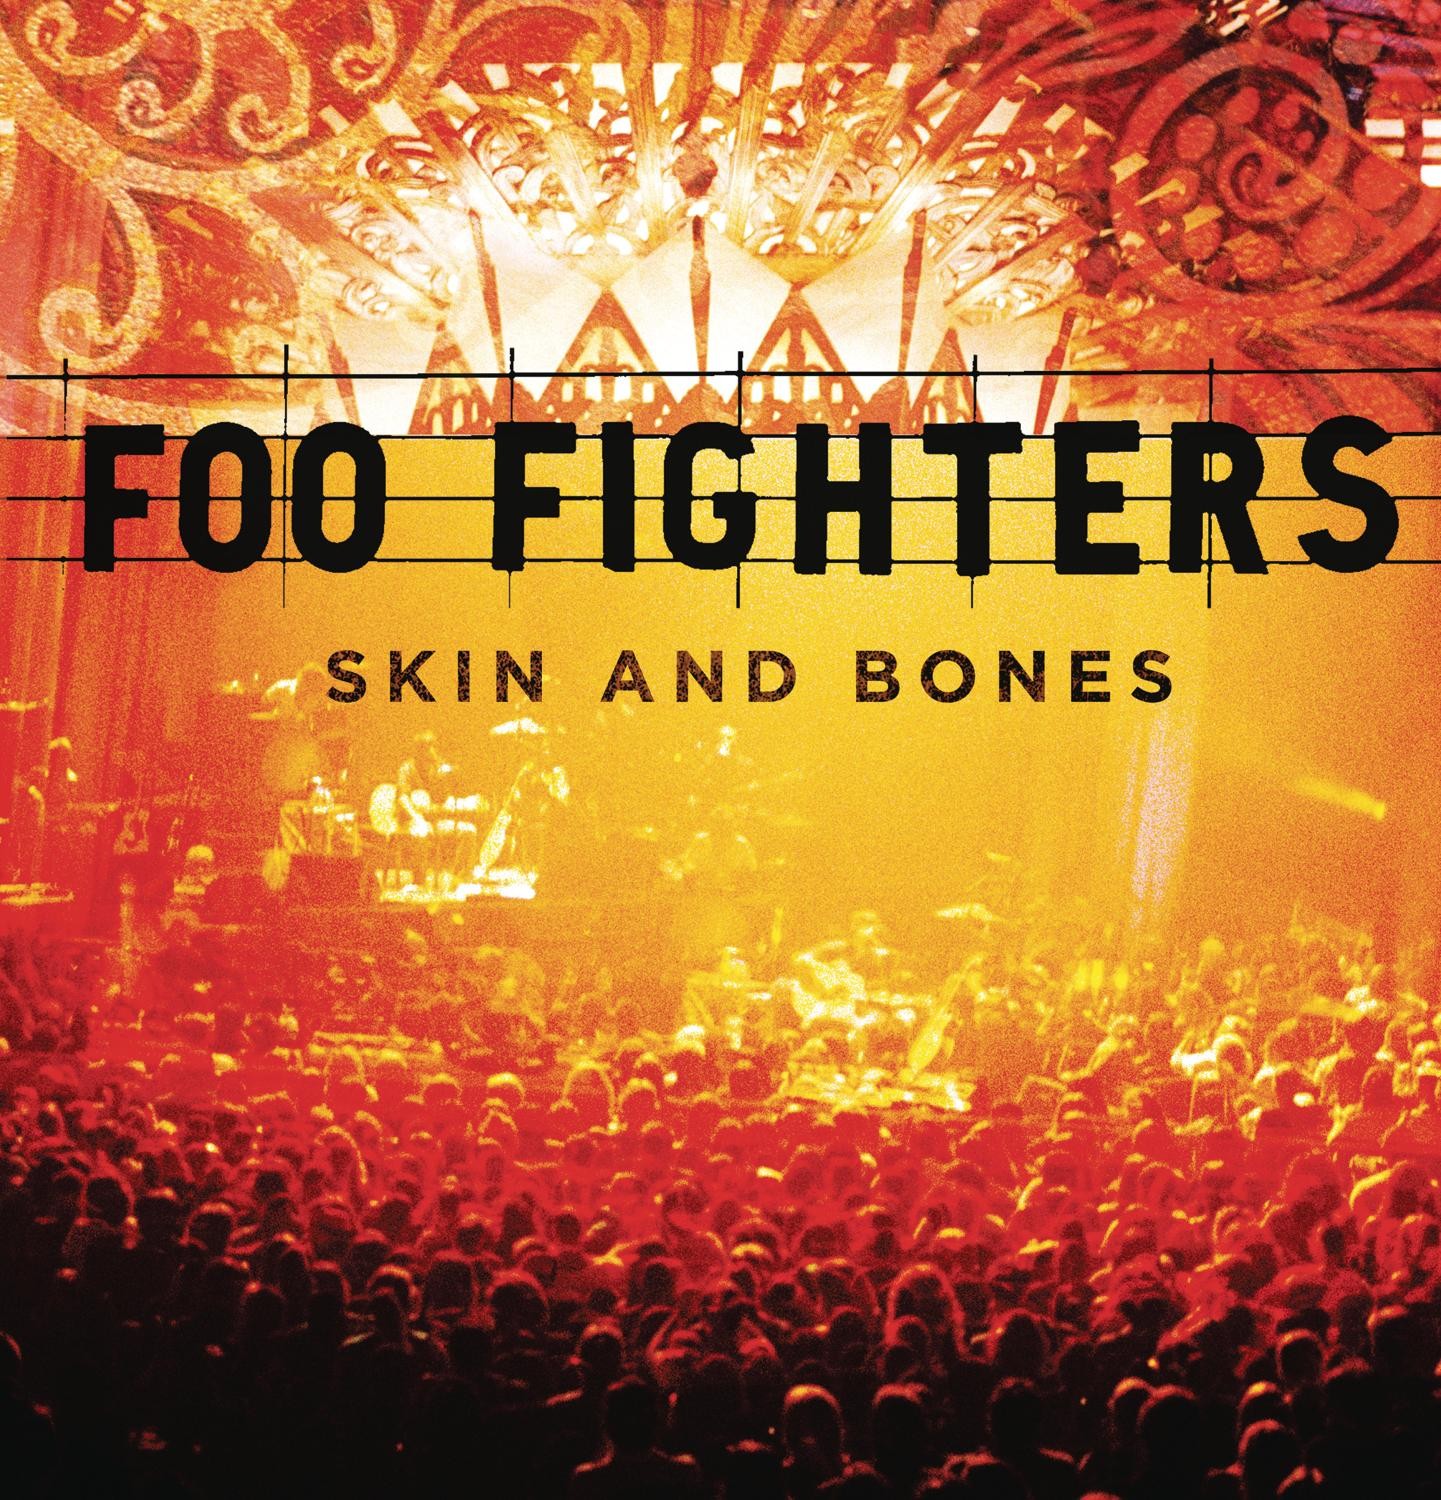 LP / Vinil - Foo Fighters - Sonic Highways